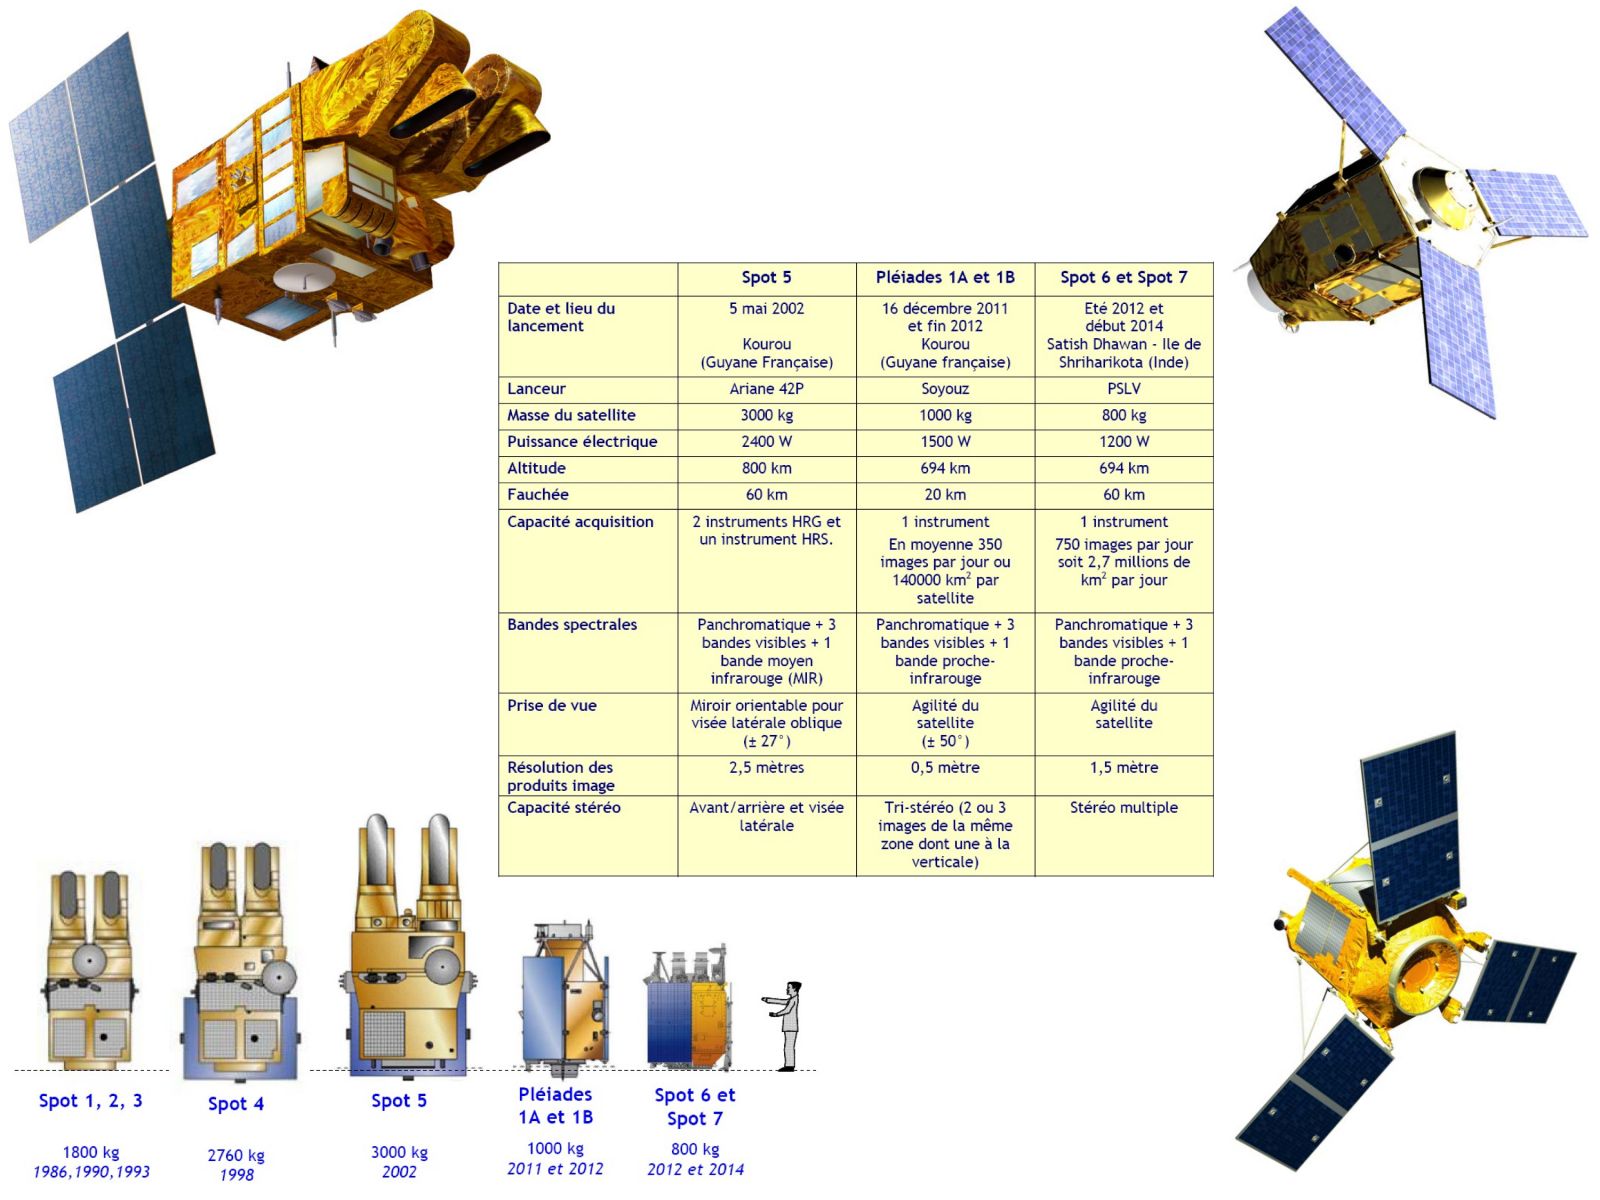 Comparaison des caractéristiques, tailles et allures des satellites Spot 5, Spot 6, Spot 7 et Pleiades 